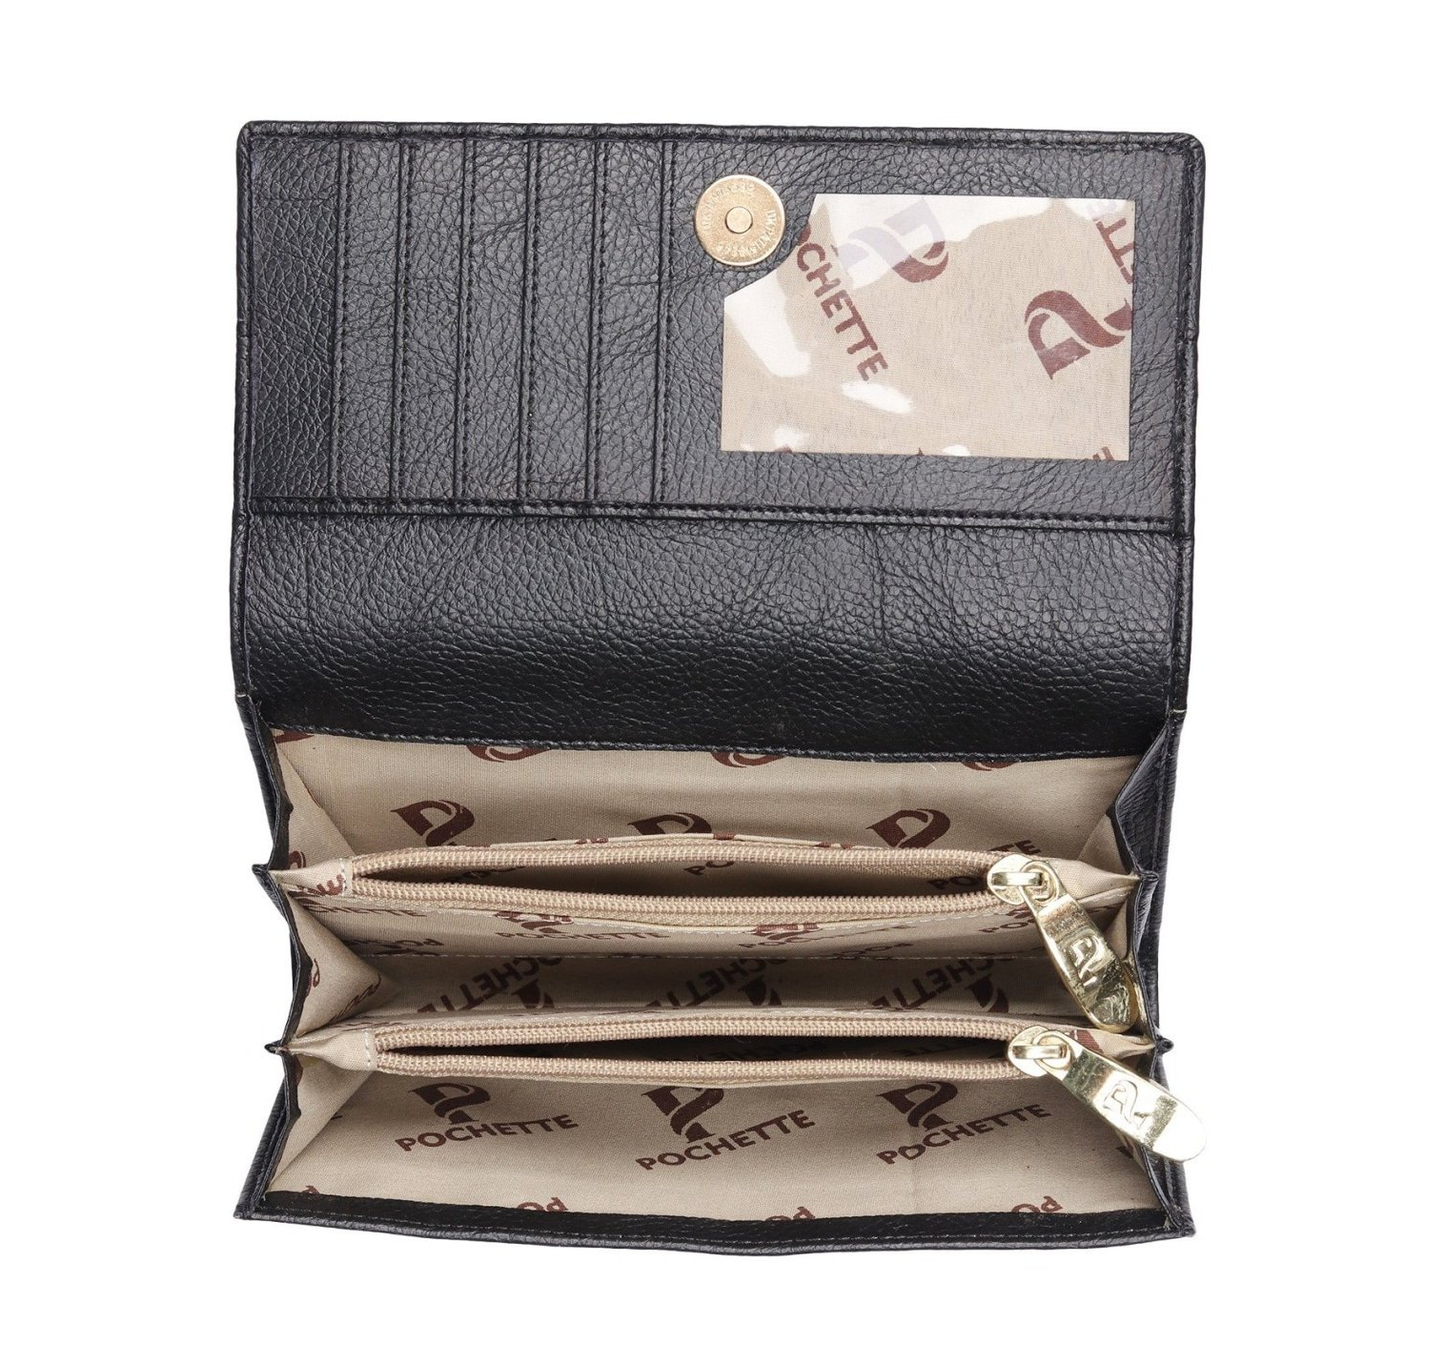 Pochette Tan Striped Wallet(Black)